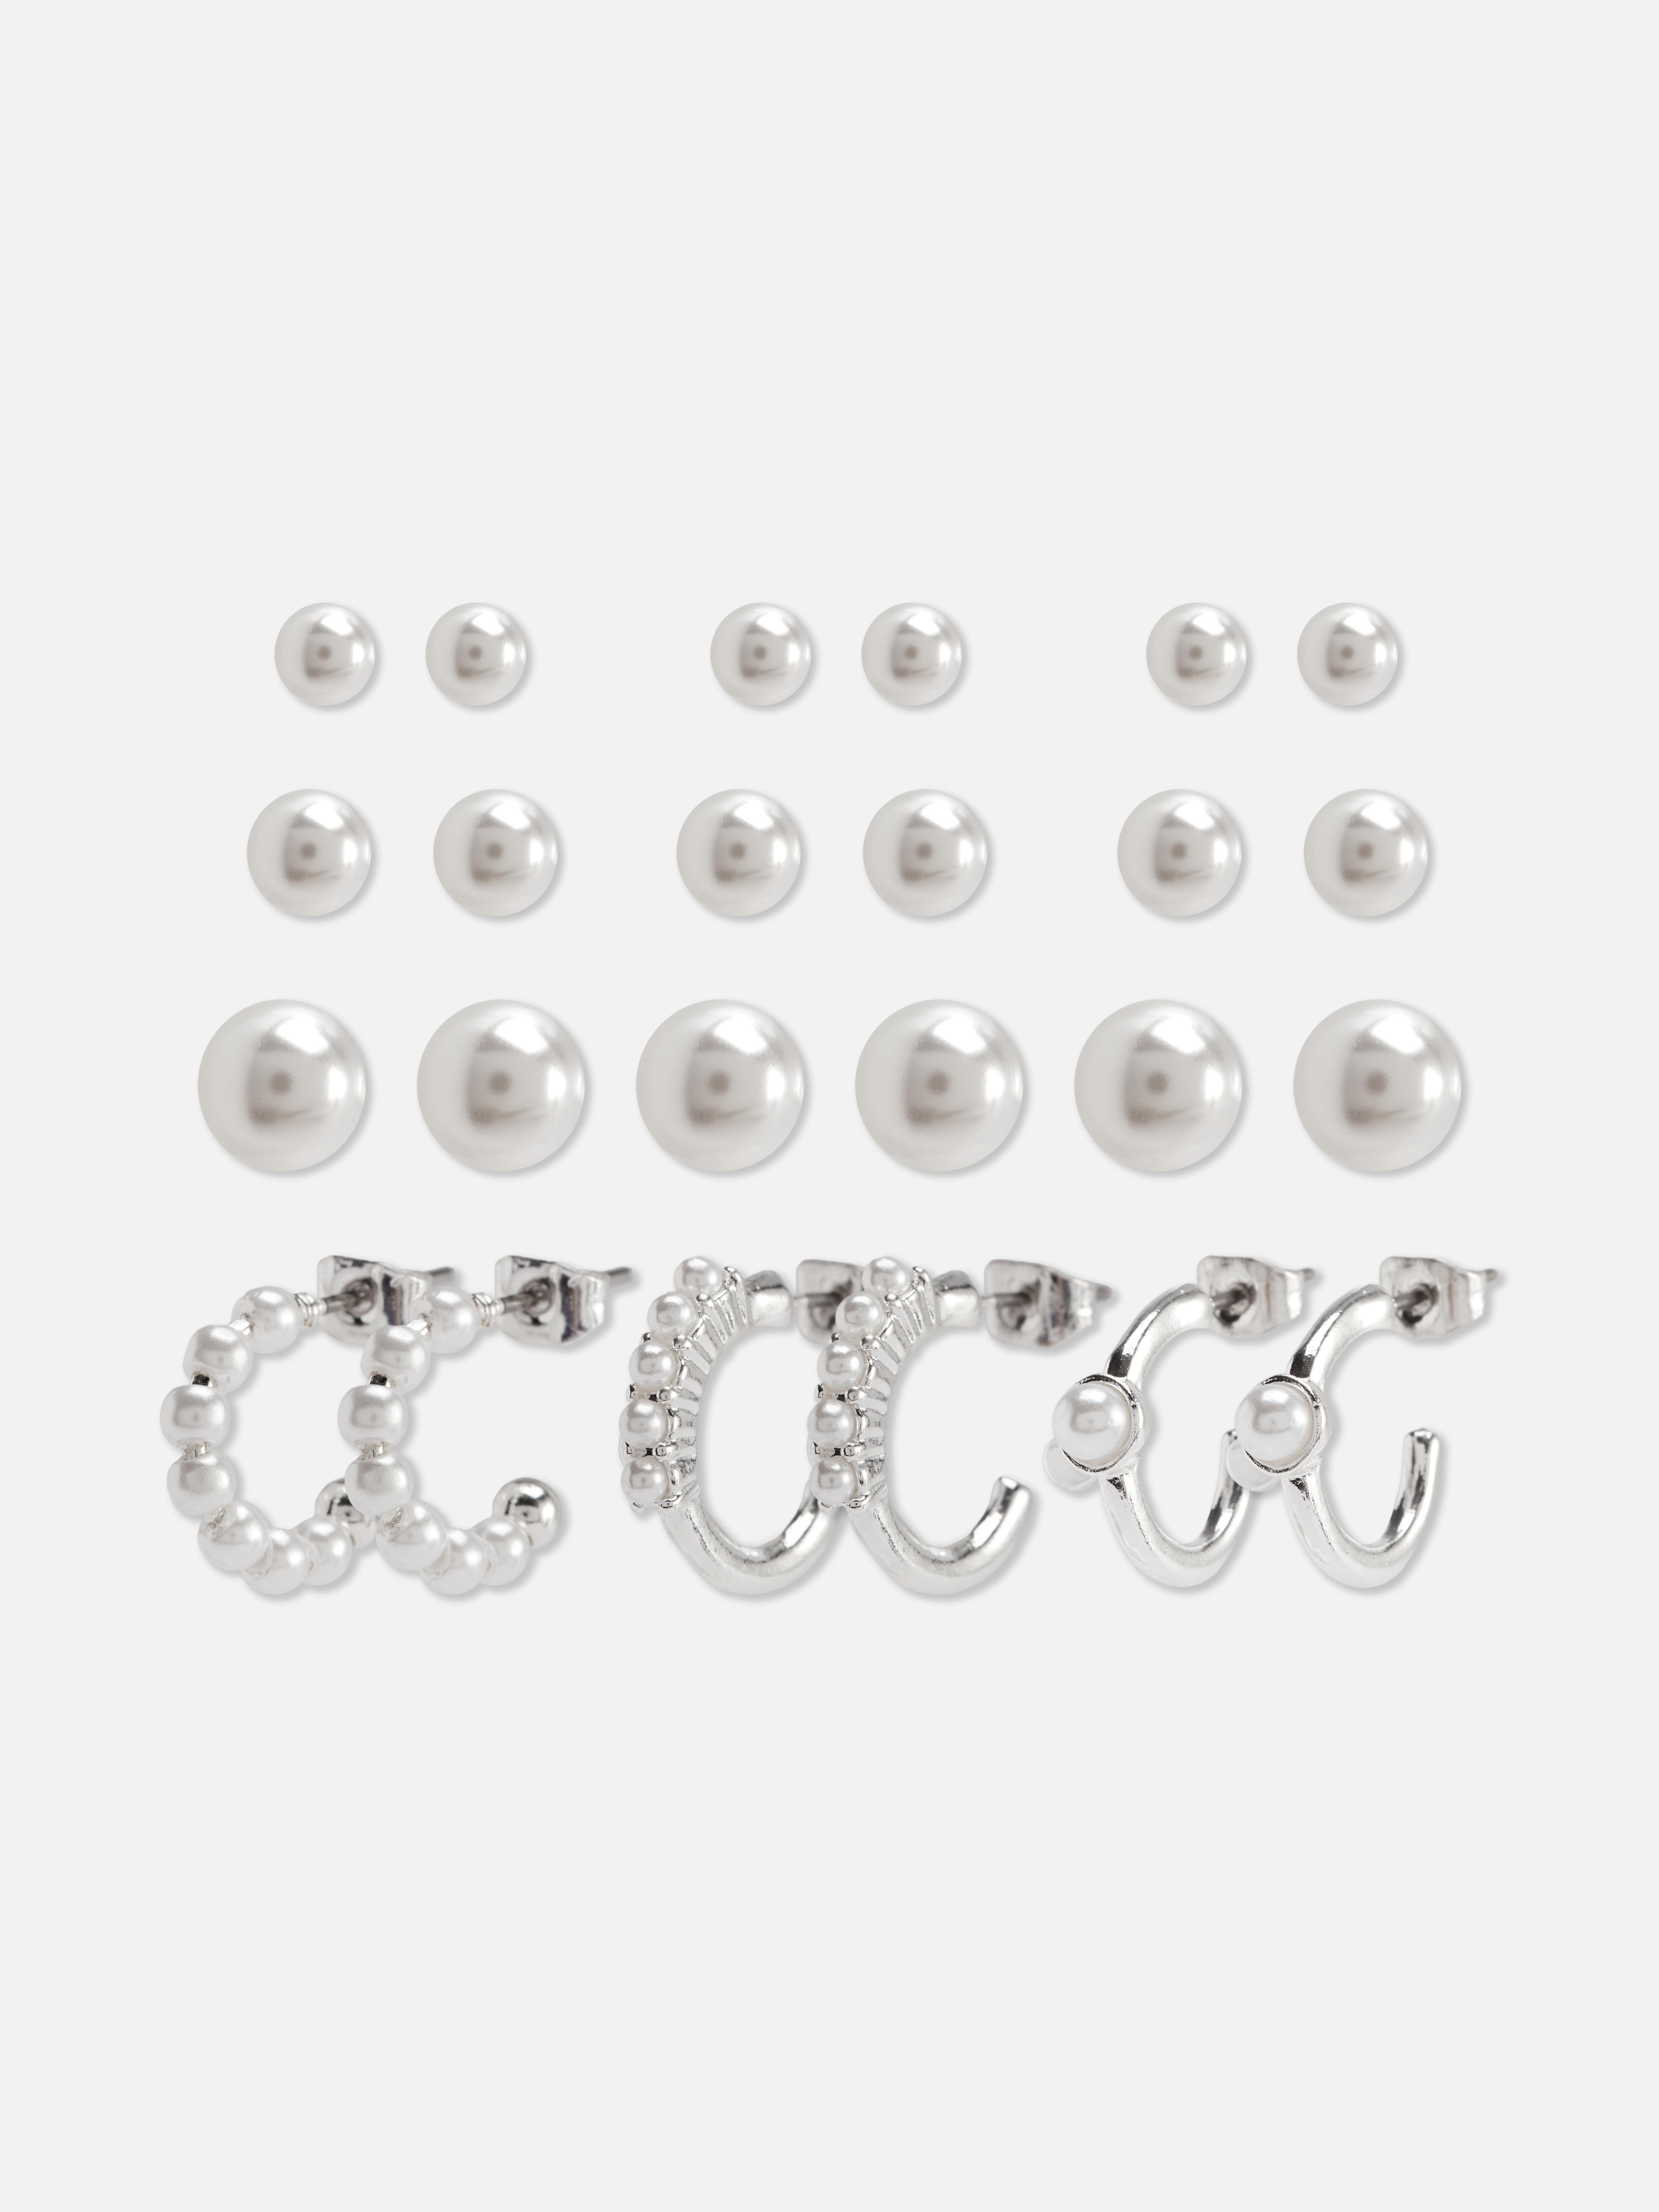 Pack de 12 pares de pendientes con perlas sintéticas